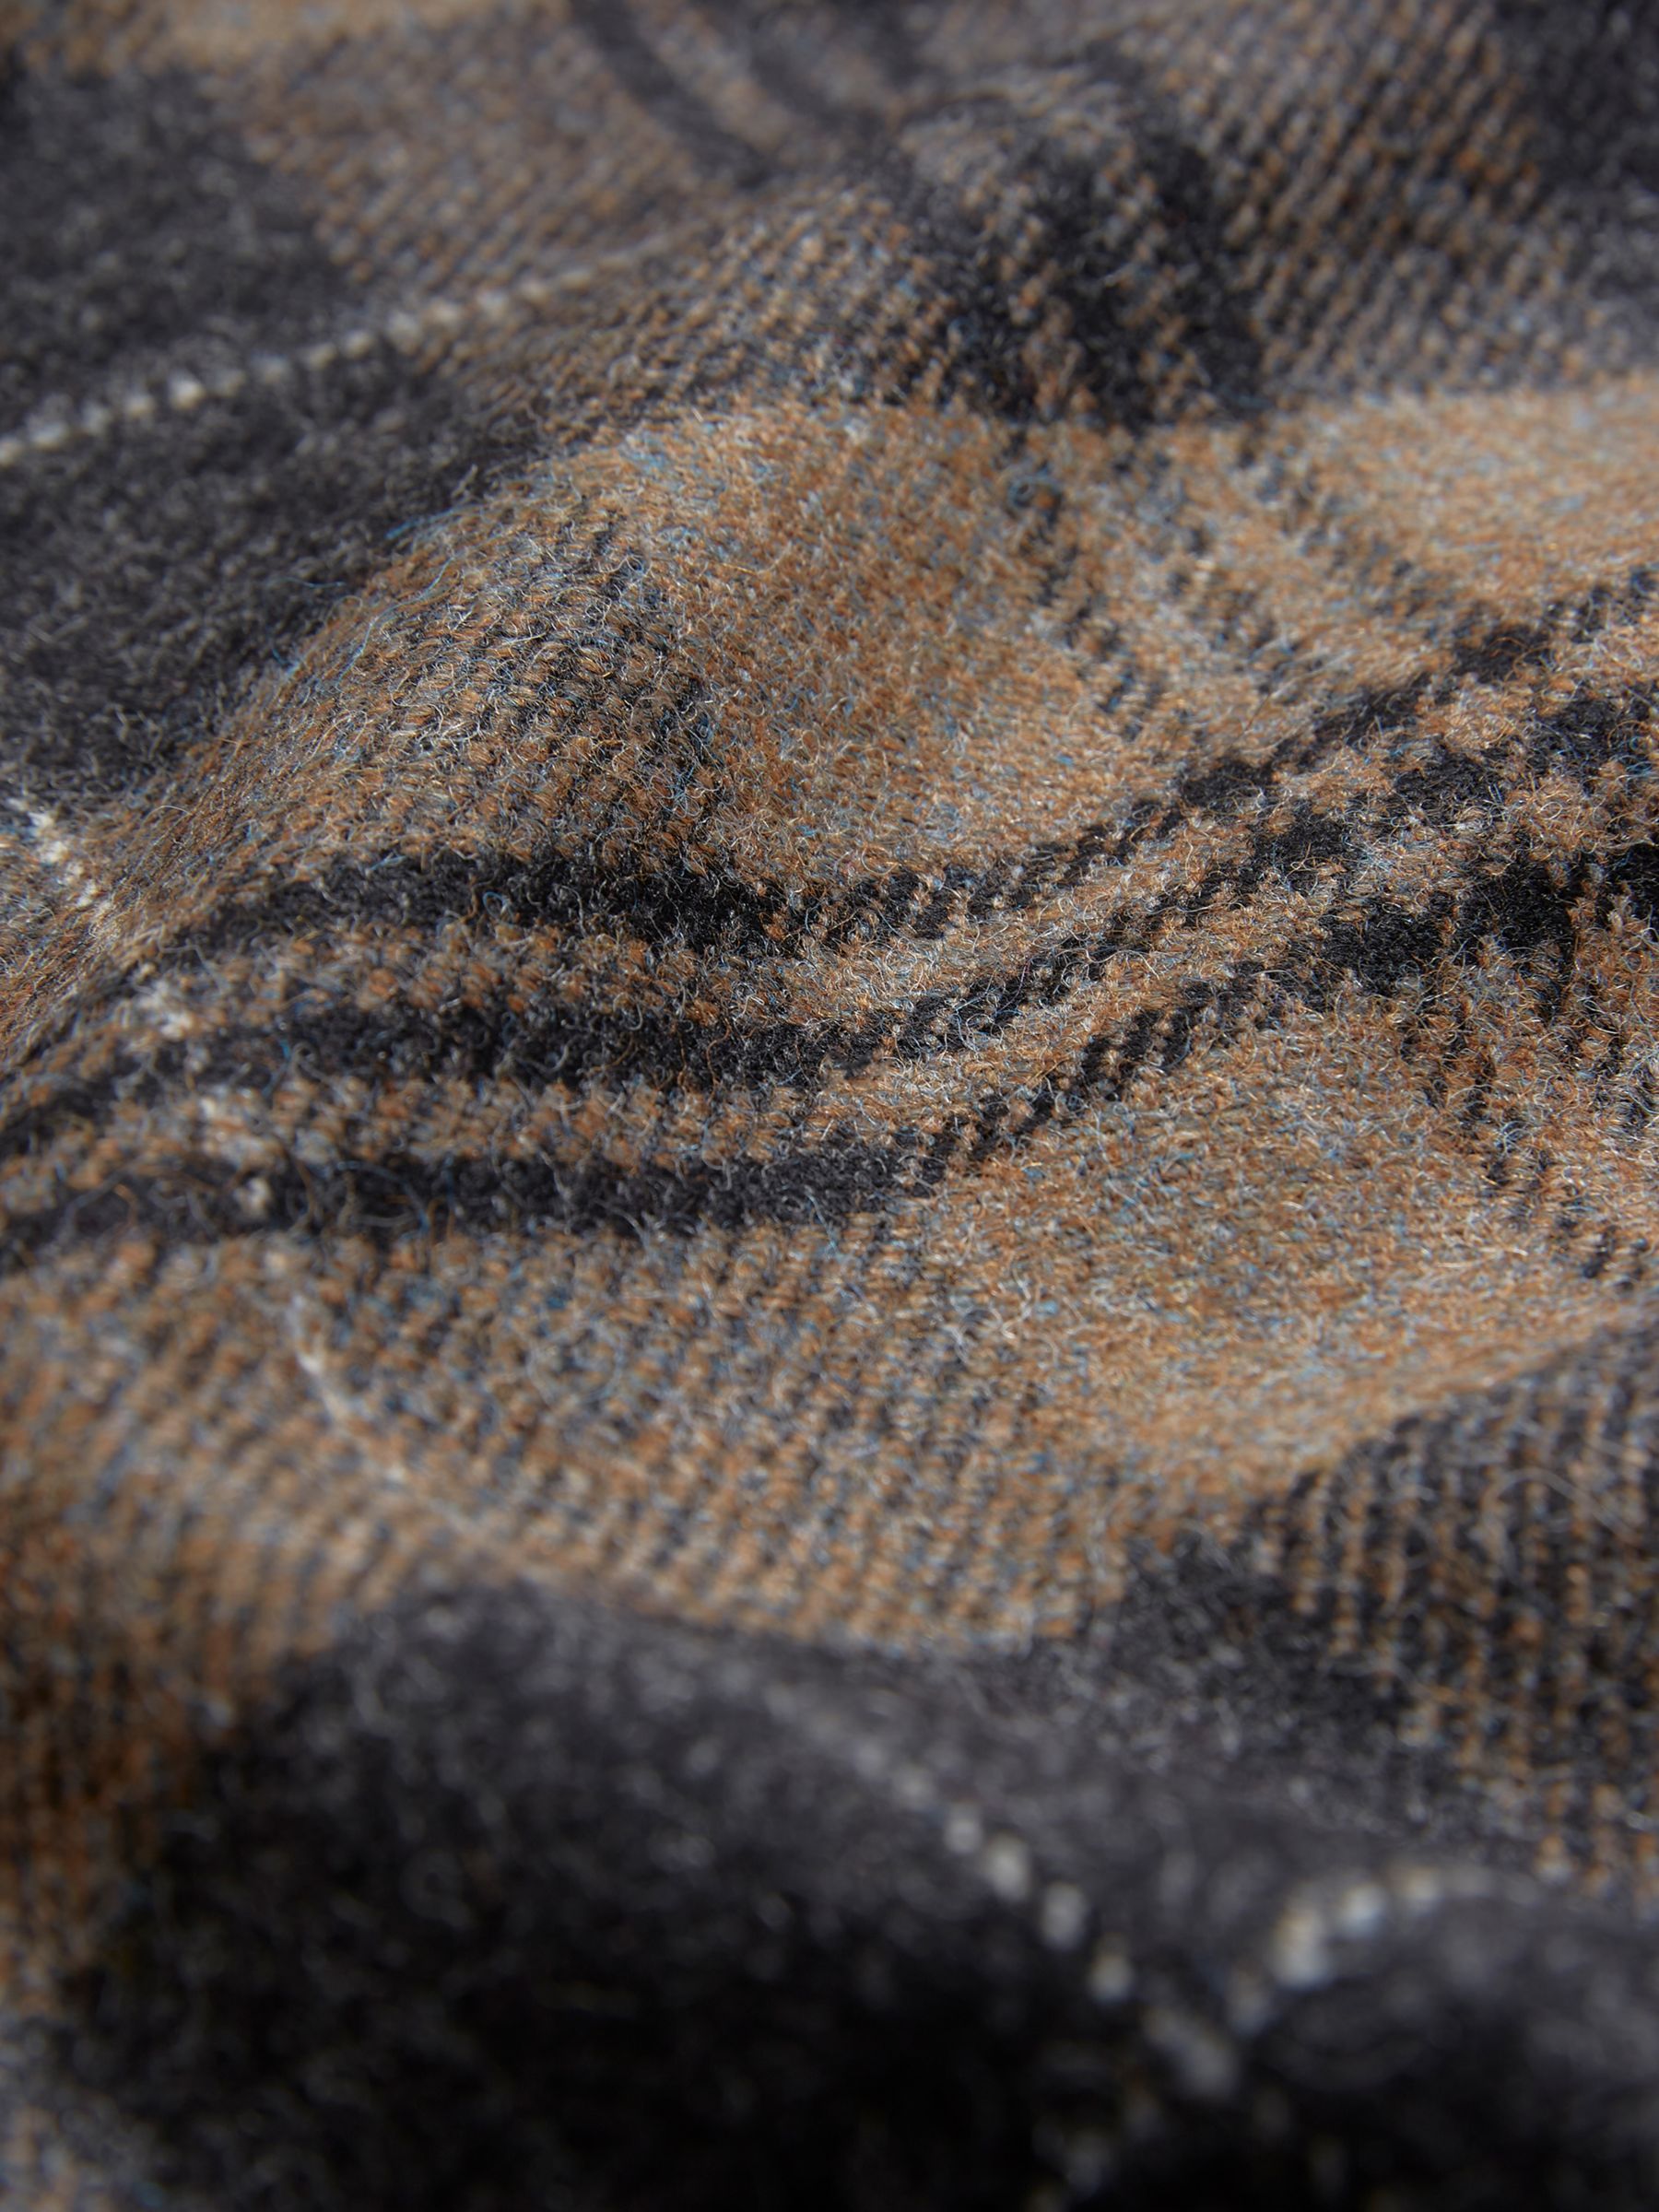 Buy Celtic & Co. The Celt Wool Kilt Skirt Online at johnlewis.com